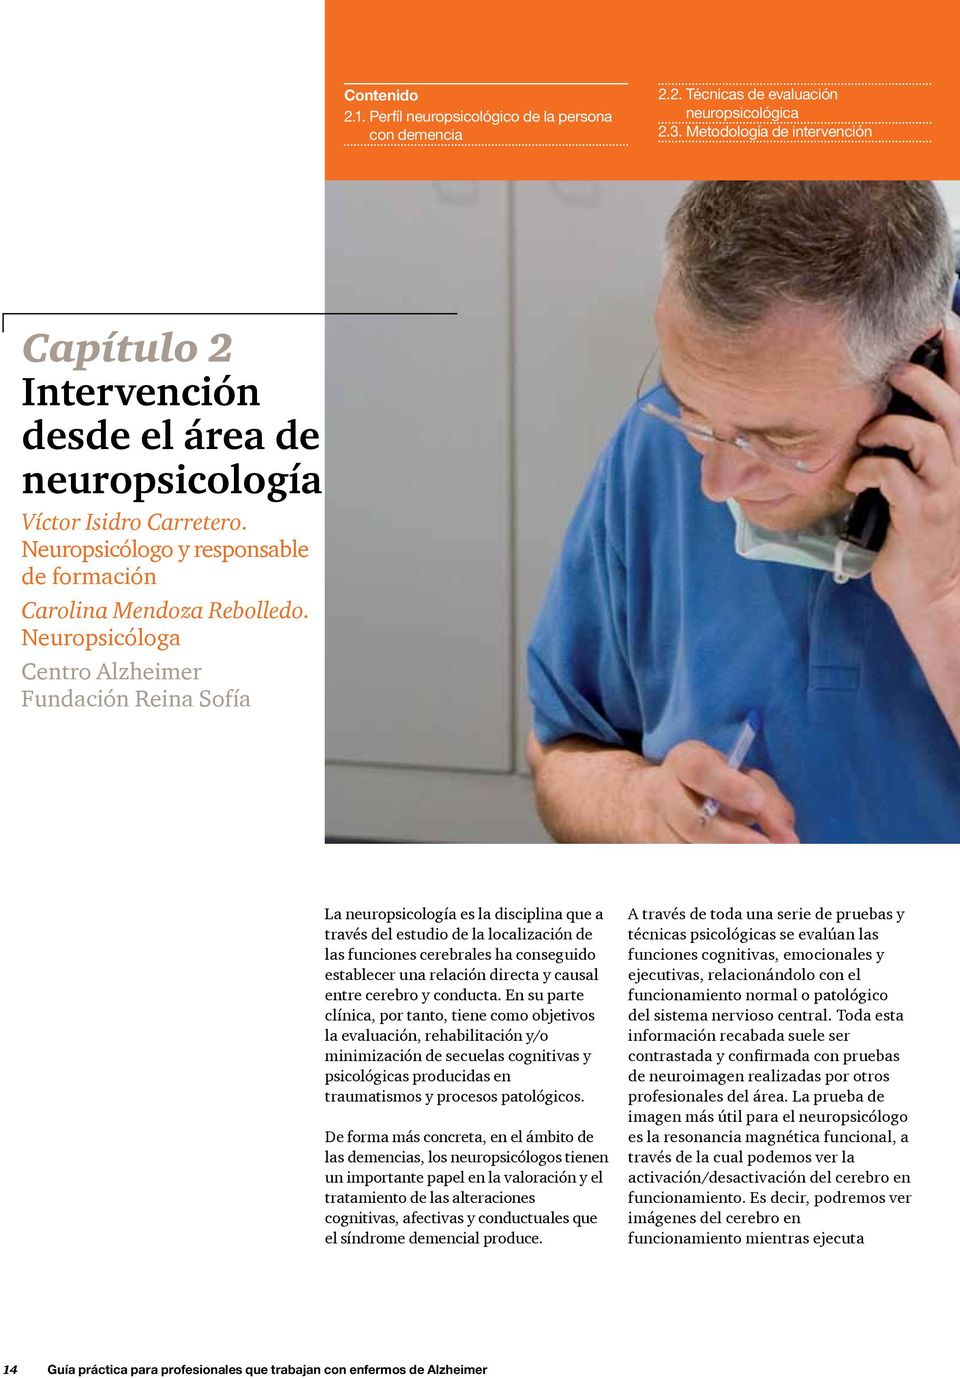 Neuropsicóloga Centro Alzheimer Fundación Reina Sofía La neuropsicología es la disciplina que a través del estudio de la localización de las funciones cerebrales ha conseguido establecer una relación